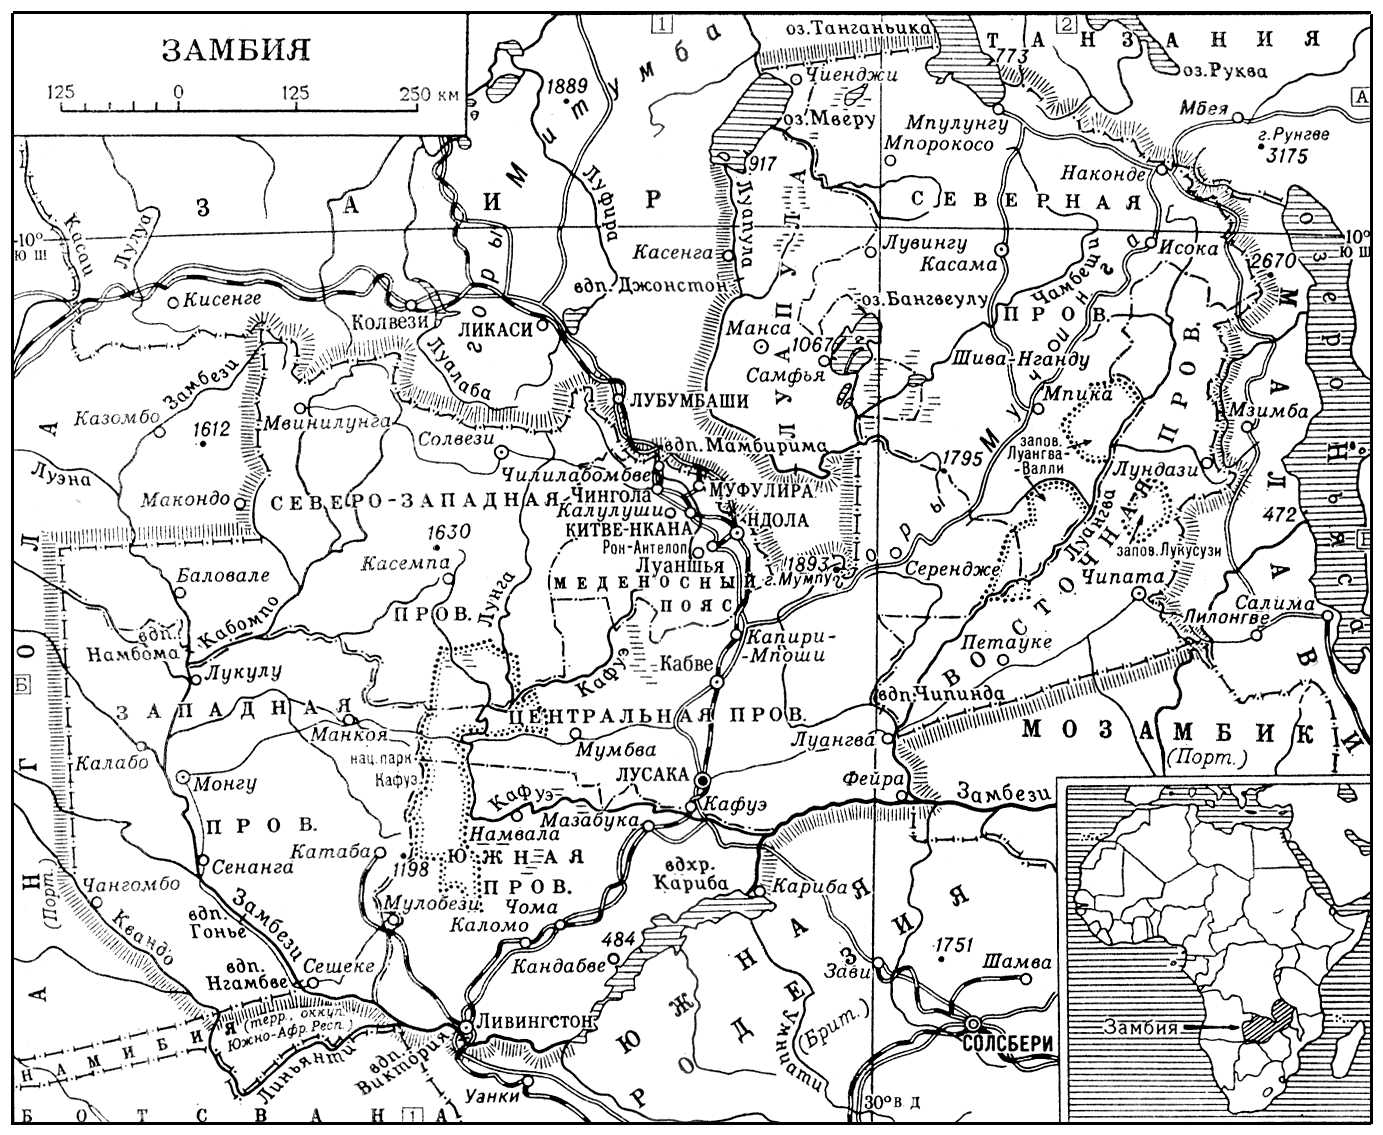 Замбия (карта)